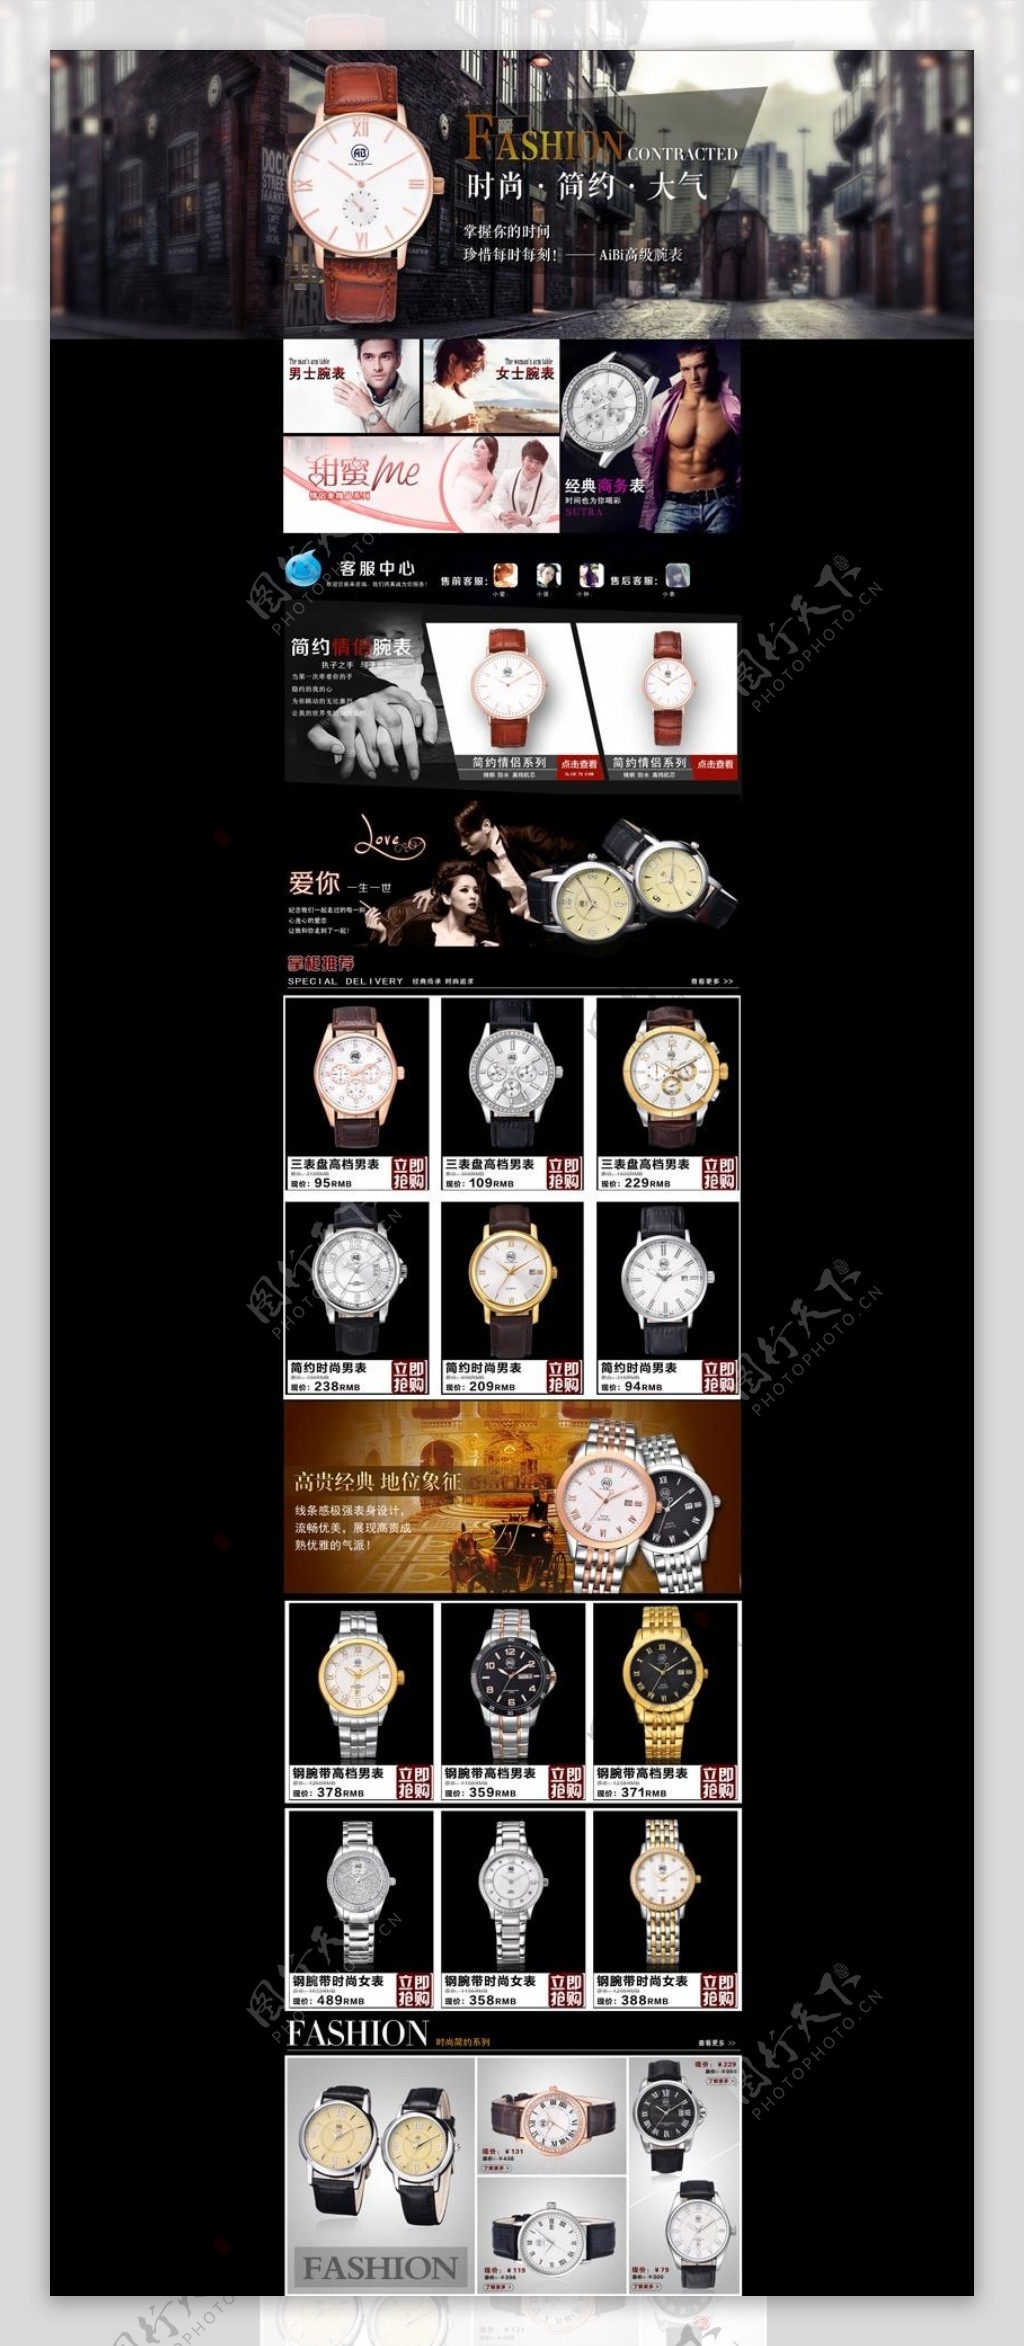 淘宝时尚手表促销页面设计PSD素材